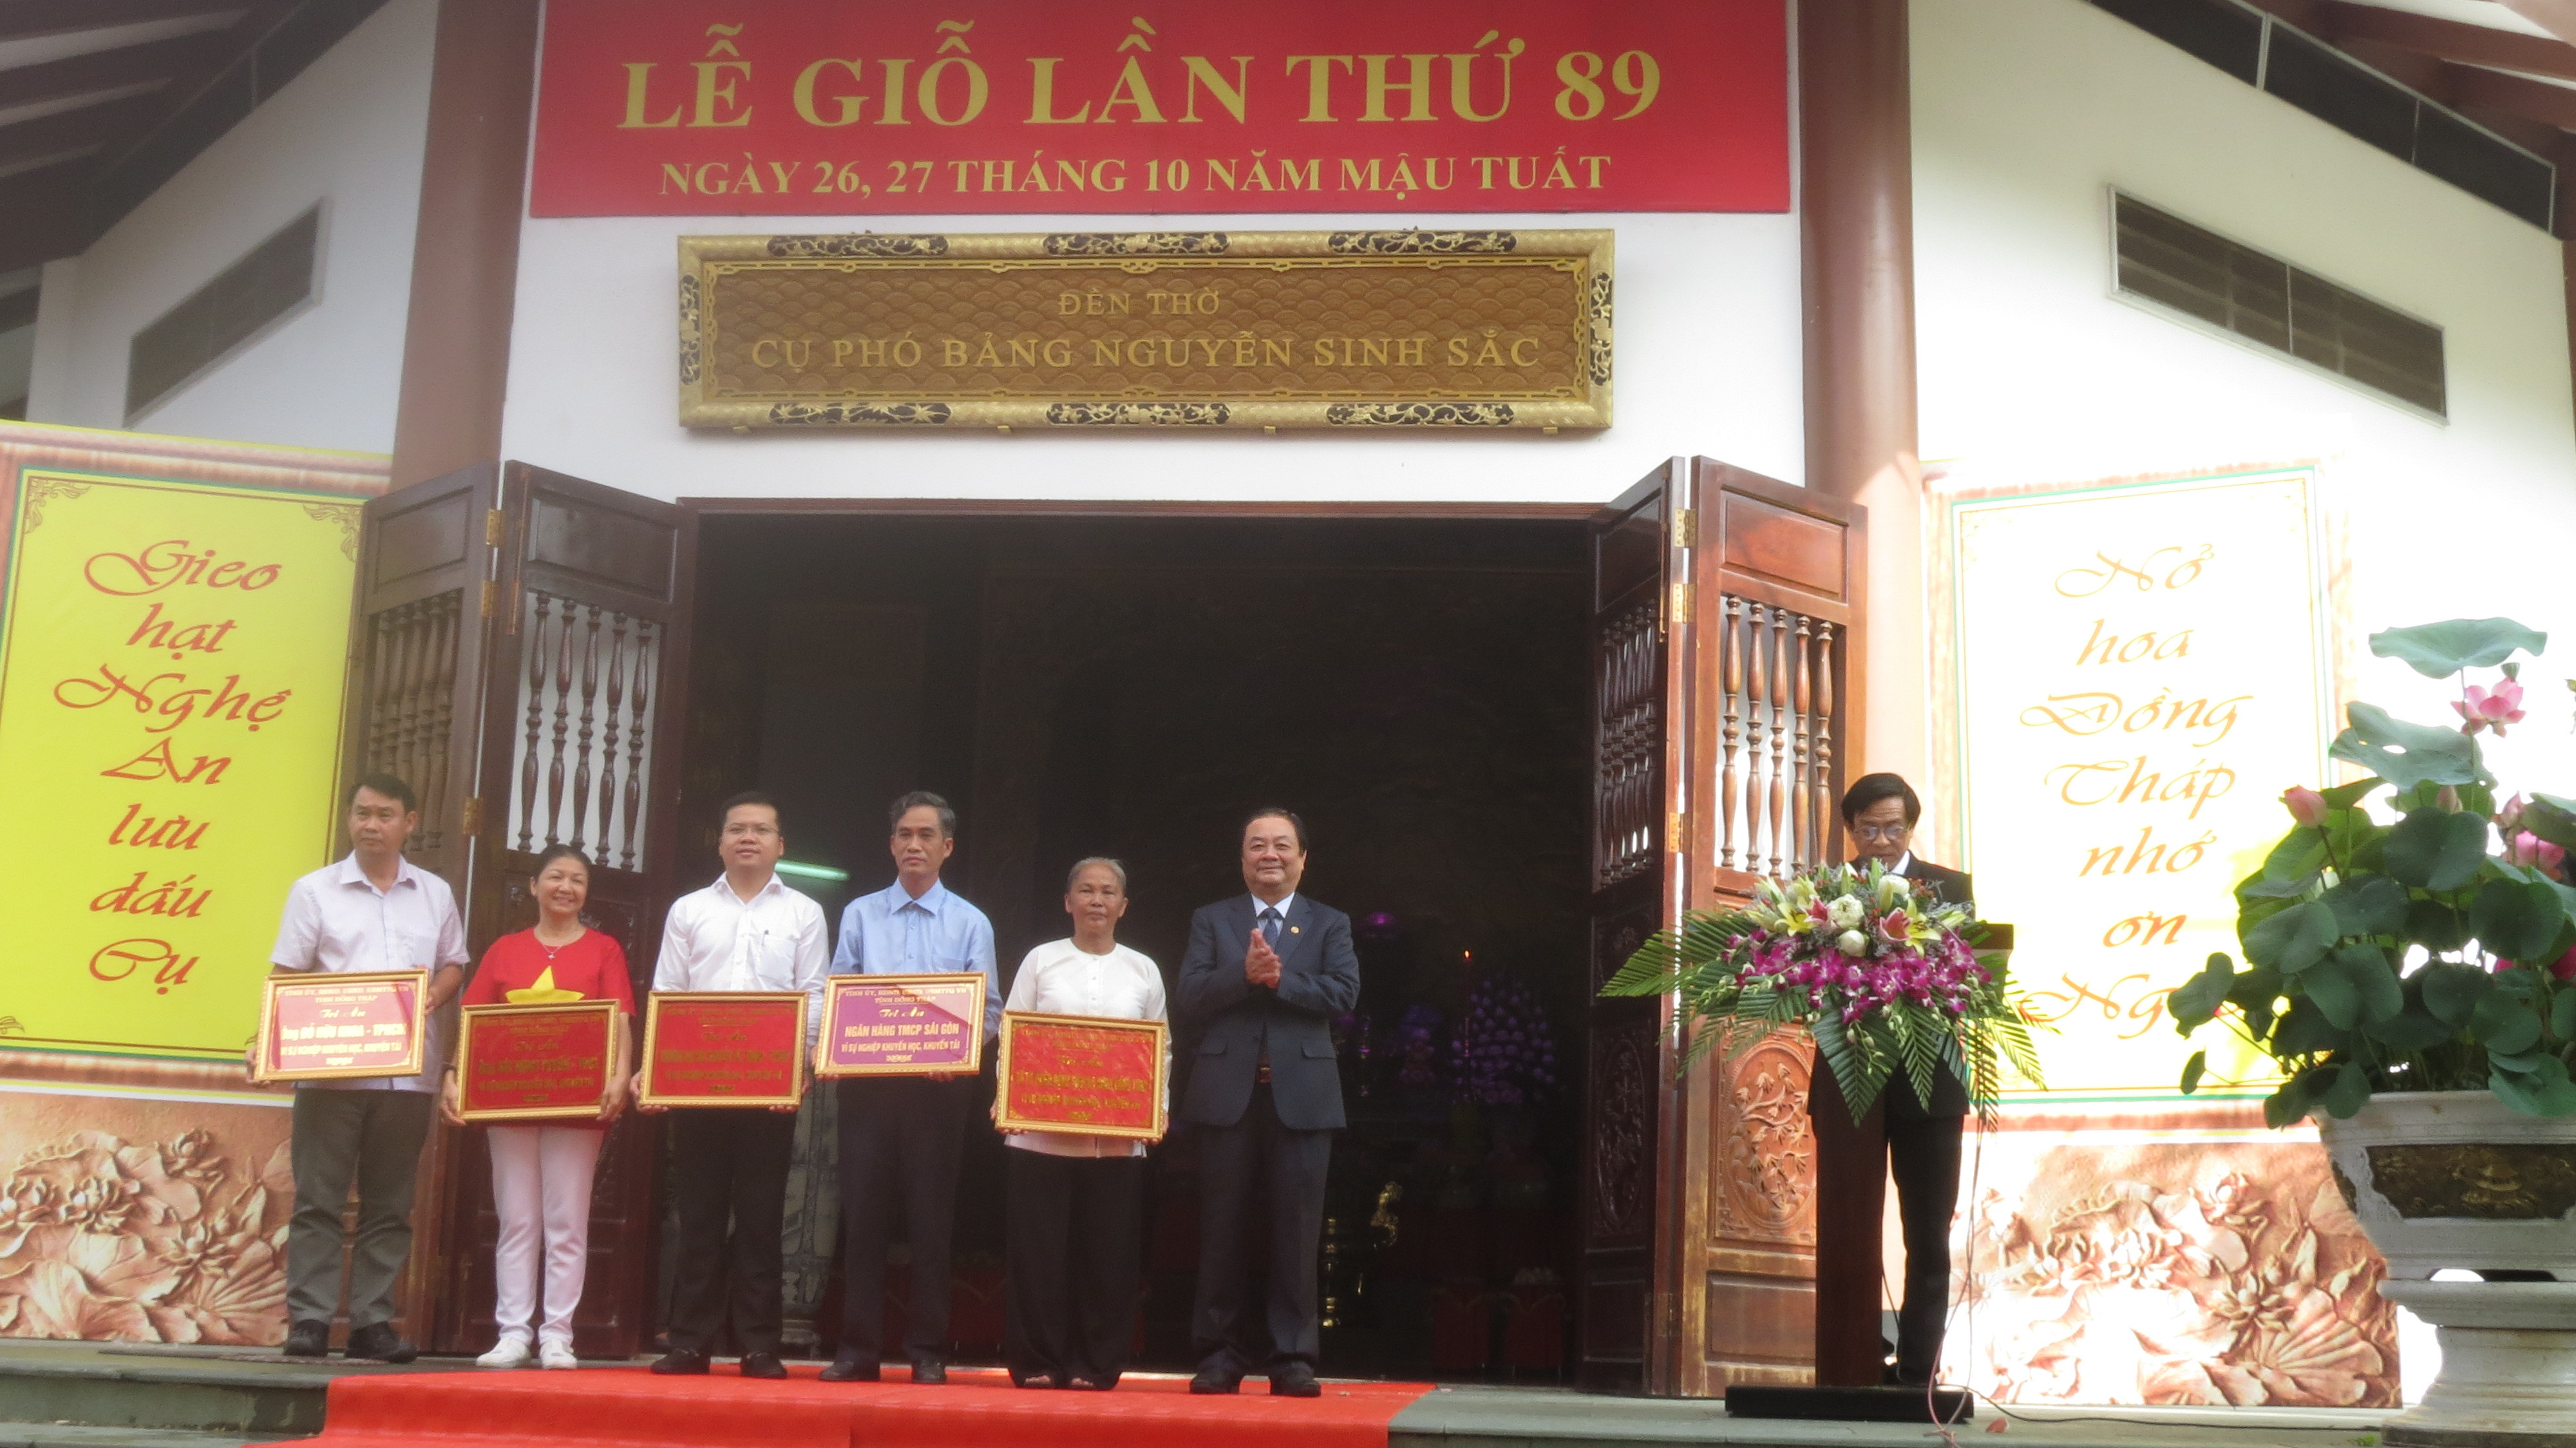 Ông Lê Minh Hoan, Bí thư Tỉnh ủy Đồng Tháp trao bảng vàng tượng trưng cho các tập thể cá nhân có thành tích đóng góp cho Quỹ khuyến học Nguyễn Sinh Sắc